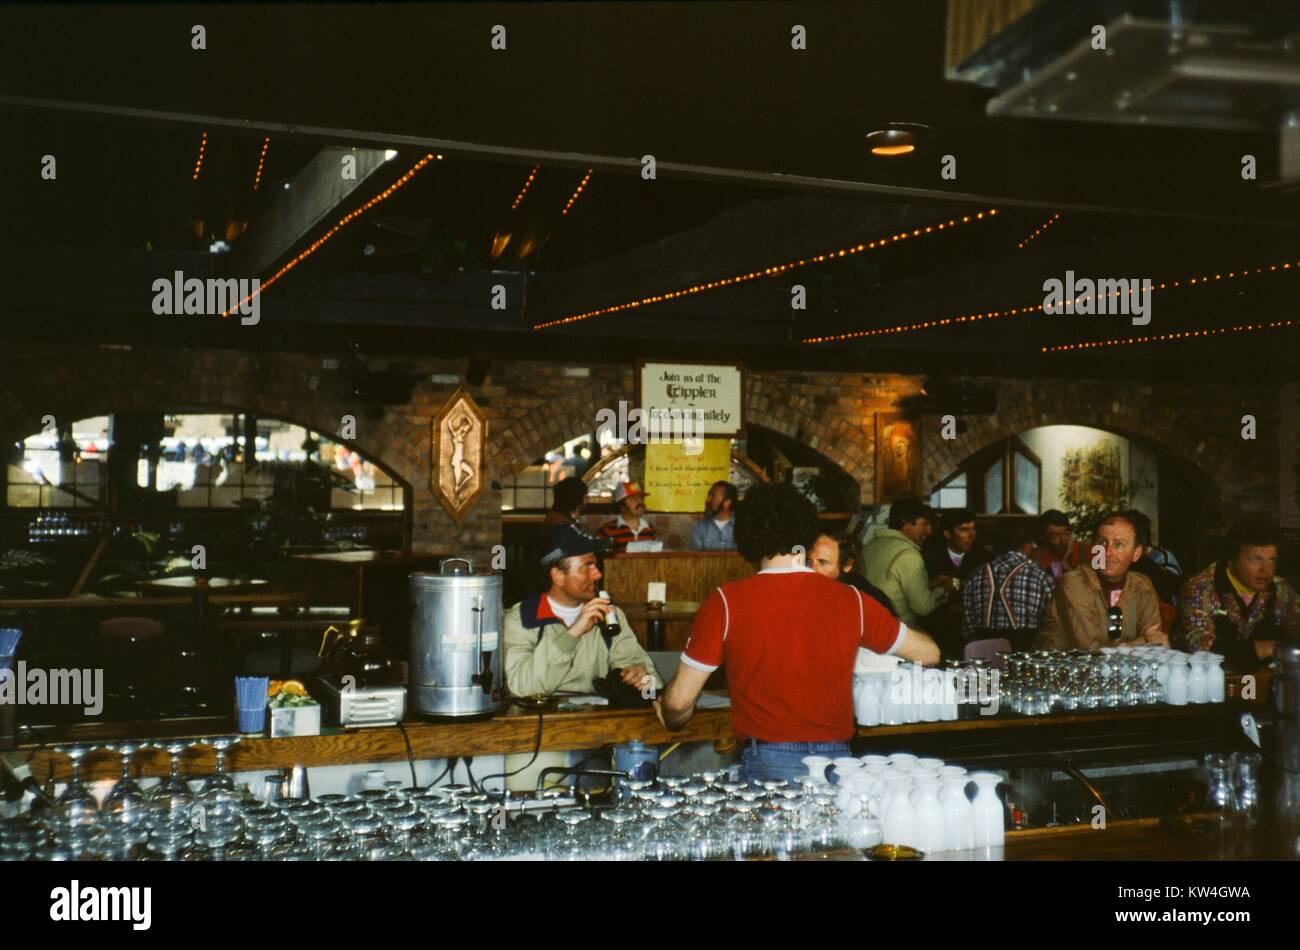 Dancing 1979 immagini e fotografie stock ad alta risoluzione - Alamy